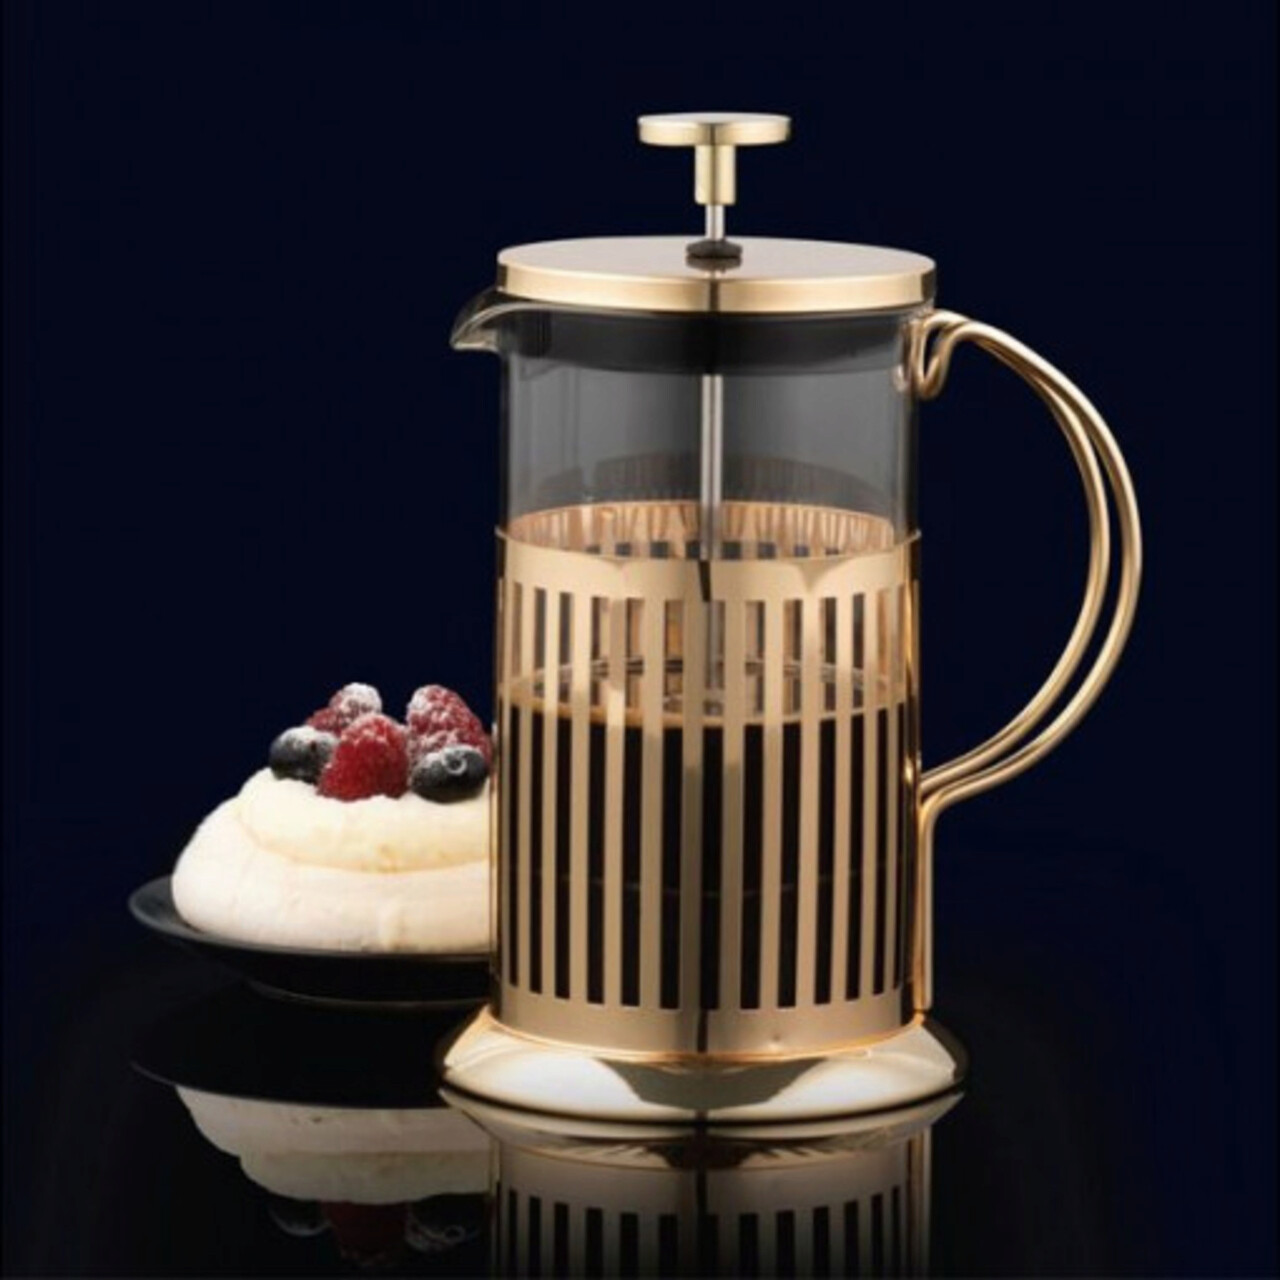 Filtru cafea/ceai Royal, Ambition, 350 ml, otel/sticla, auriu/transparent